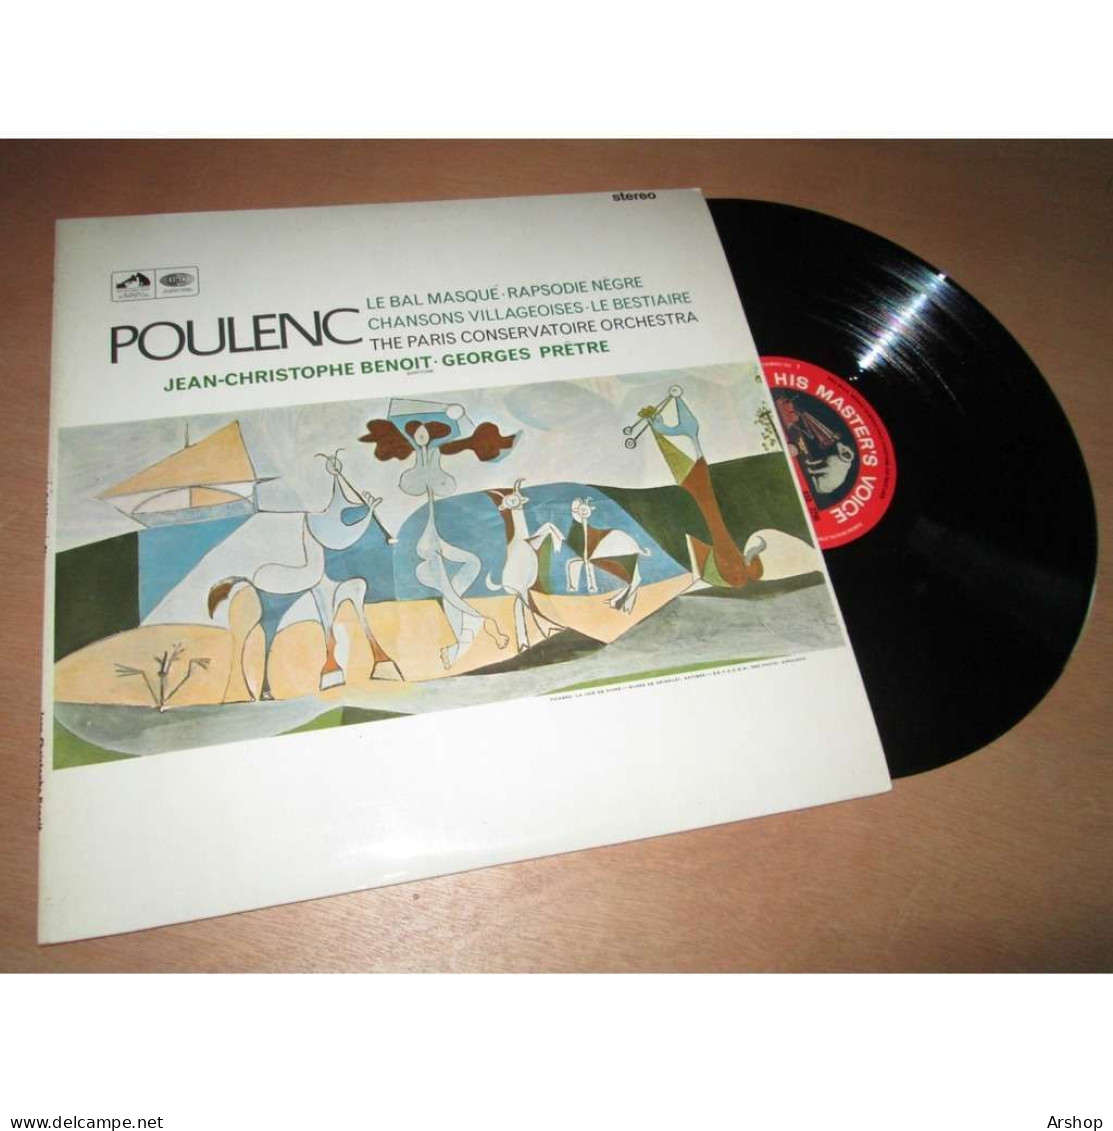 GEORGES PRETRE Le Bal Masqué - Rapsodie Negre - Le Bestiaire & POULENC - His Master Voice ASD 2296 UK Lp 1966 - Klassik